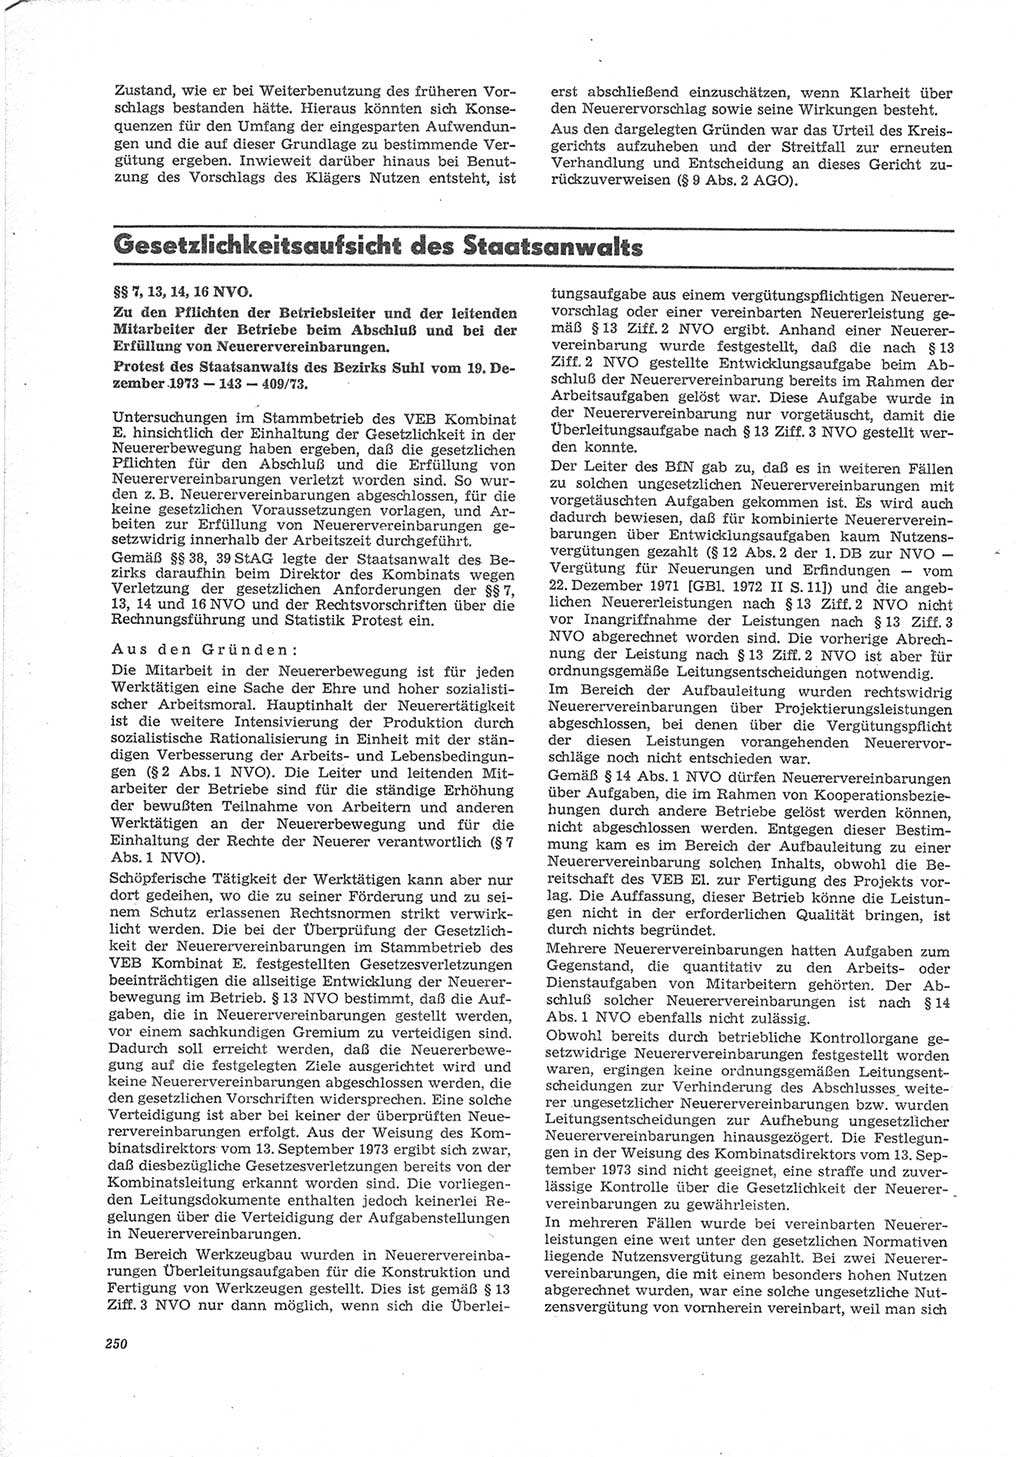 Neue Justiz (NJ), Zeitschrift für Recht und Rechtswissenschaft [Deutsche Demokratische Republik (DDR)], 28. Jahrgang 1974, Seite 250 (NJ DDR 1974, S. 250)